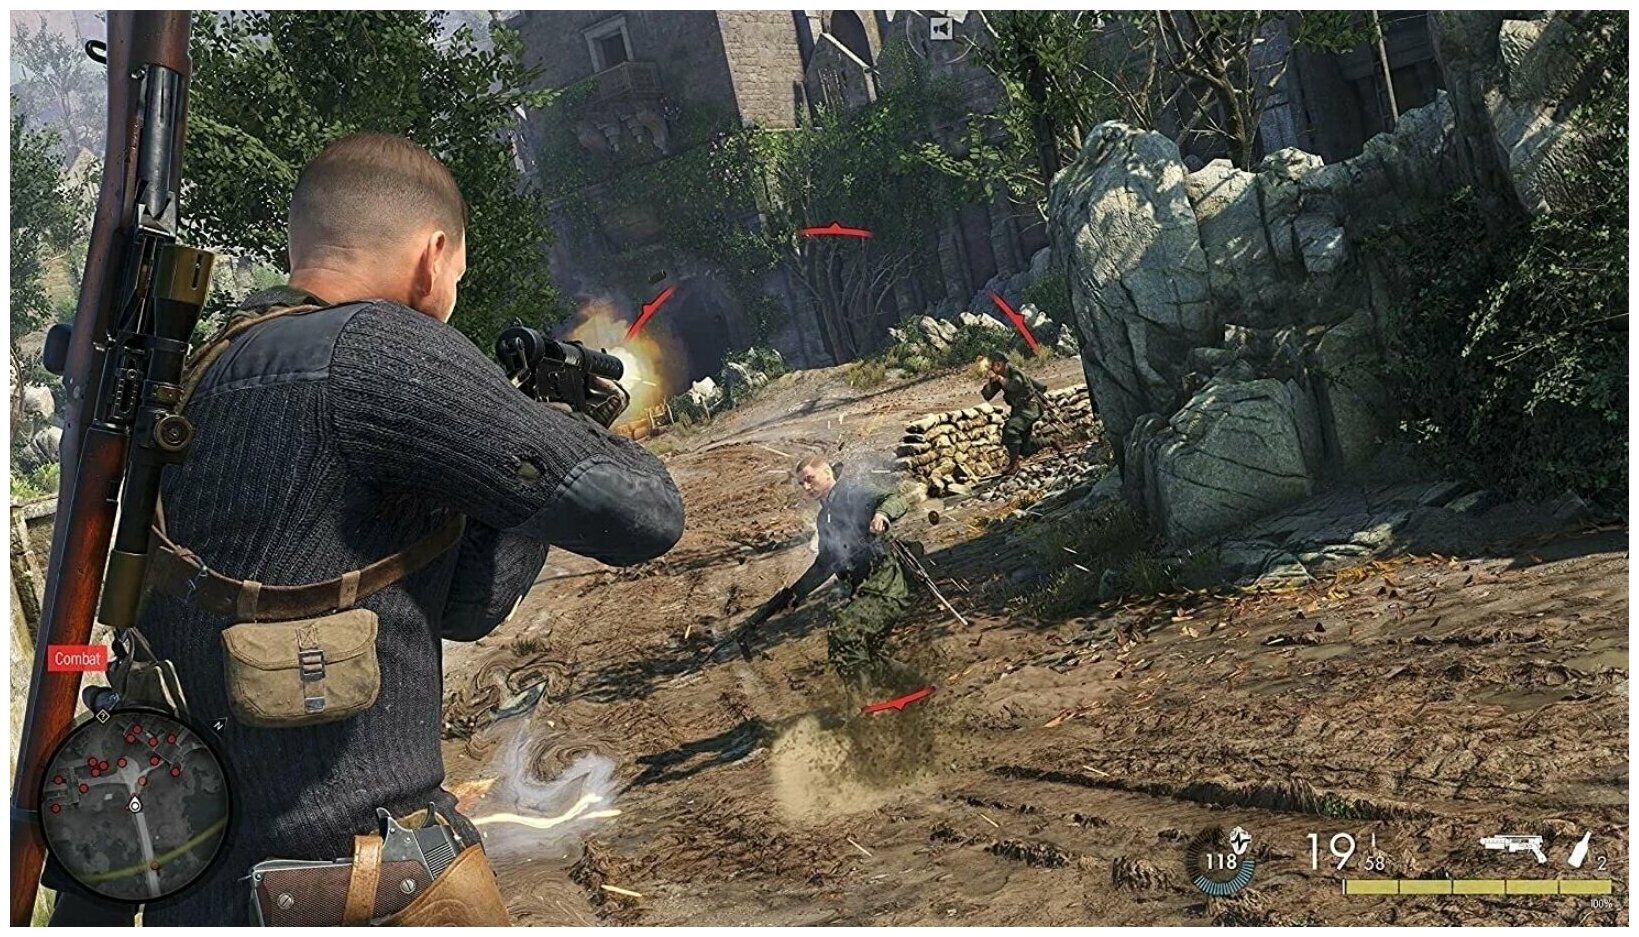 Игра PS4 - Sniper Elite 5 (русские субтитры)